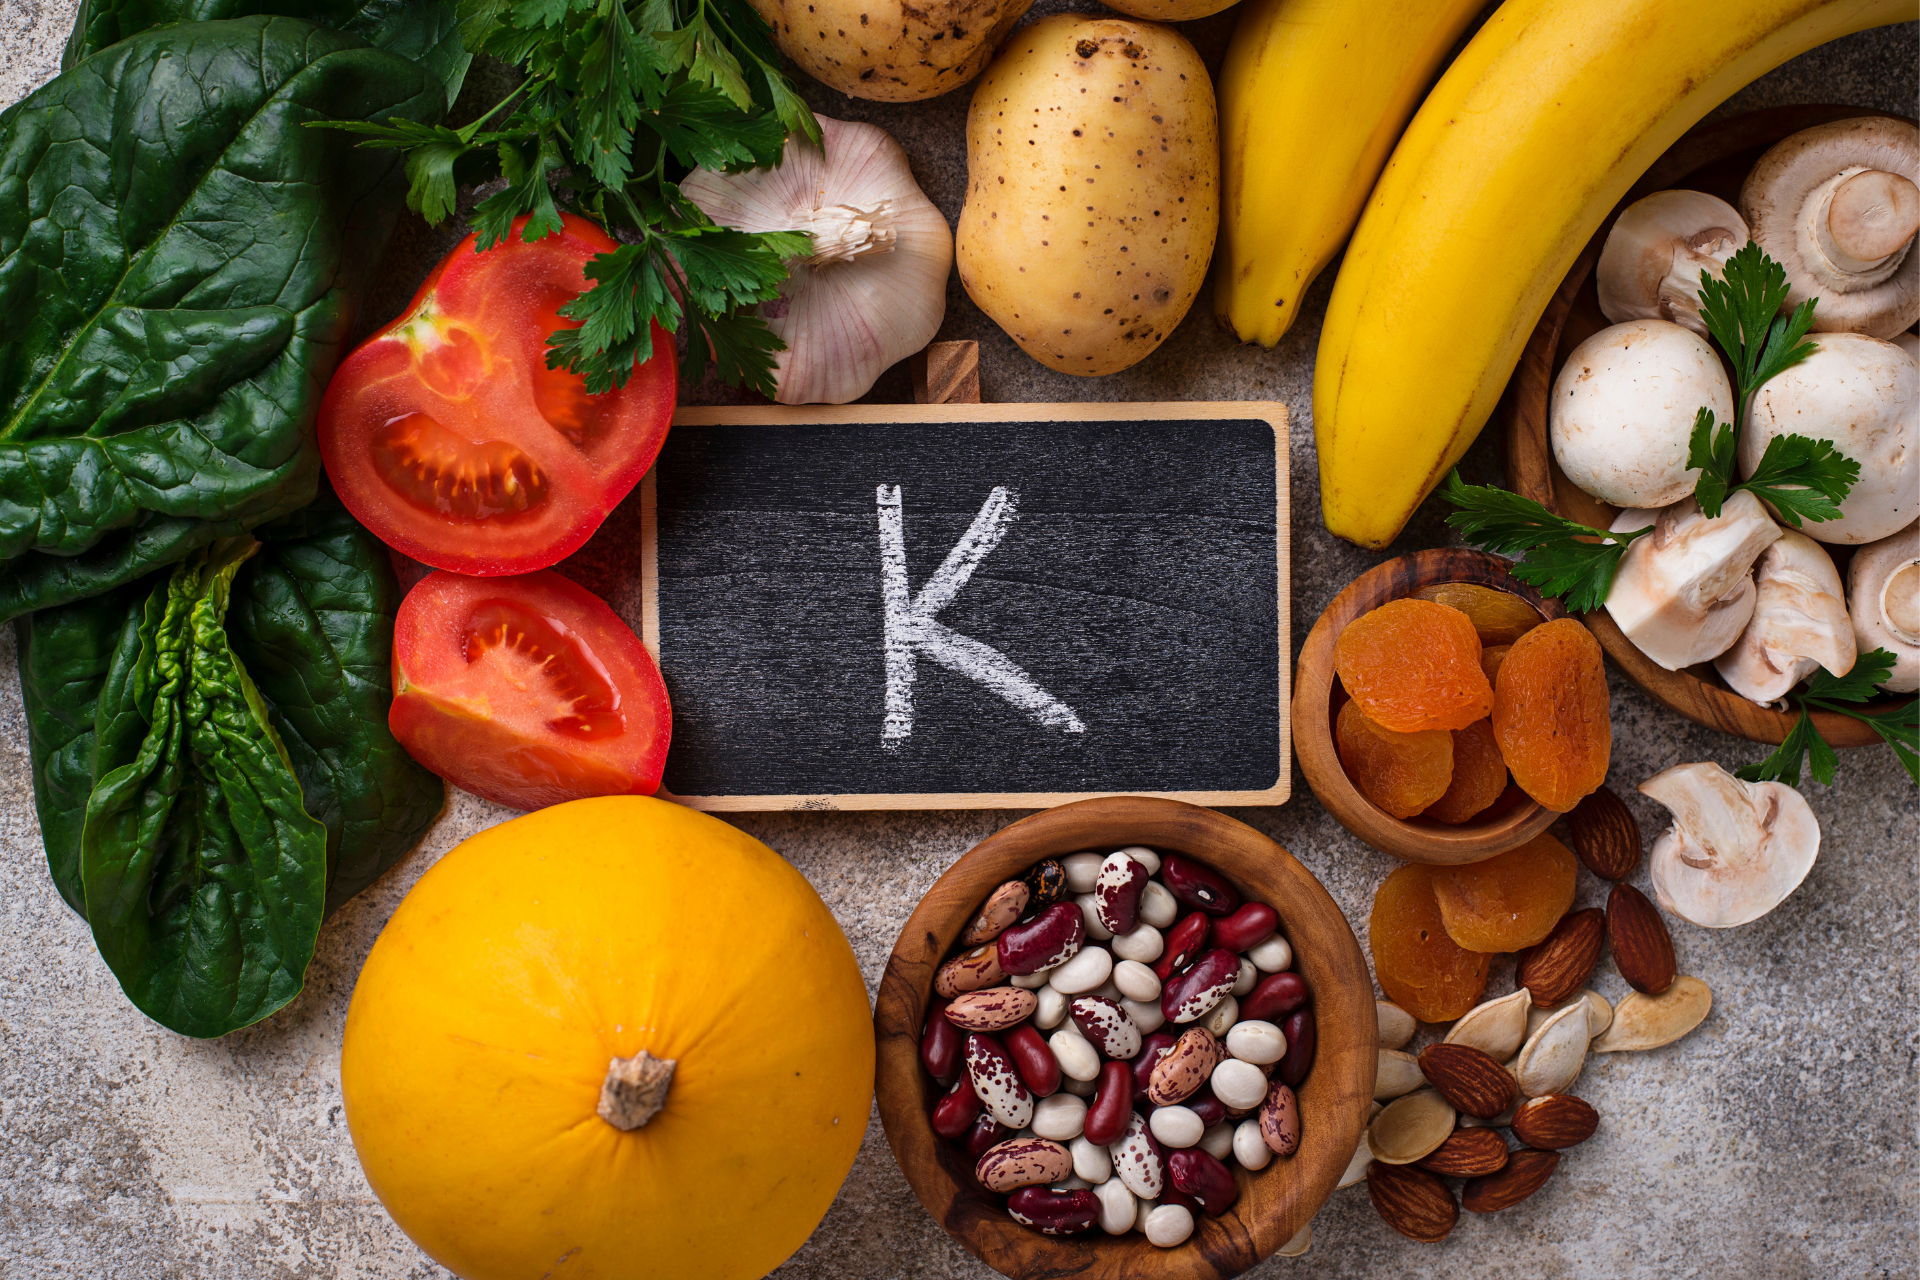 Ngaba uyazi ukuba i-vitamin k2 iluncedo kwi-calcium supplement?